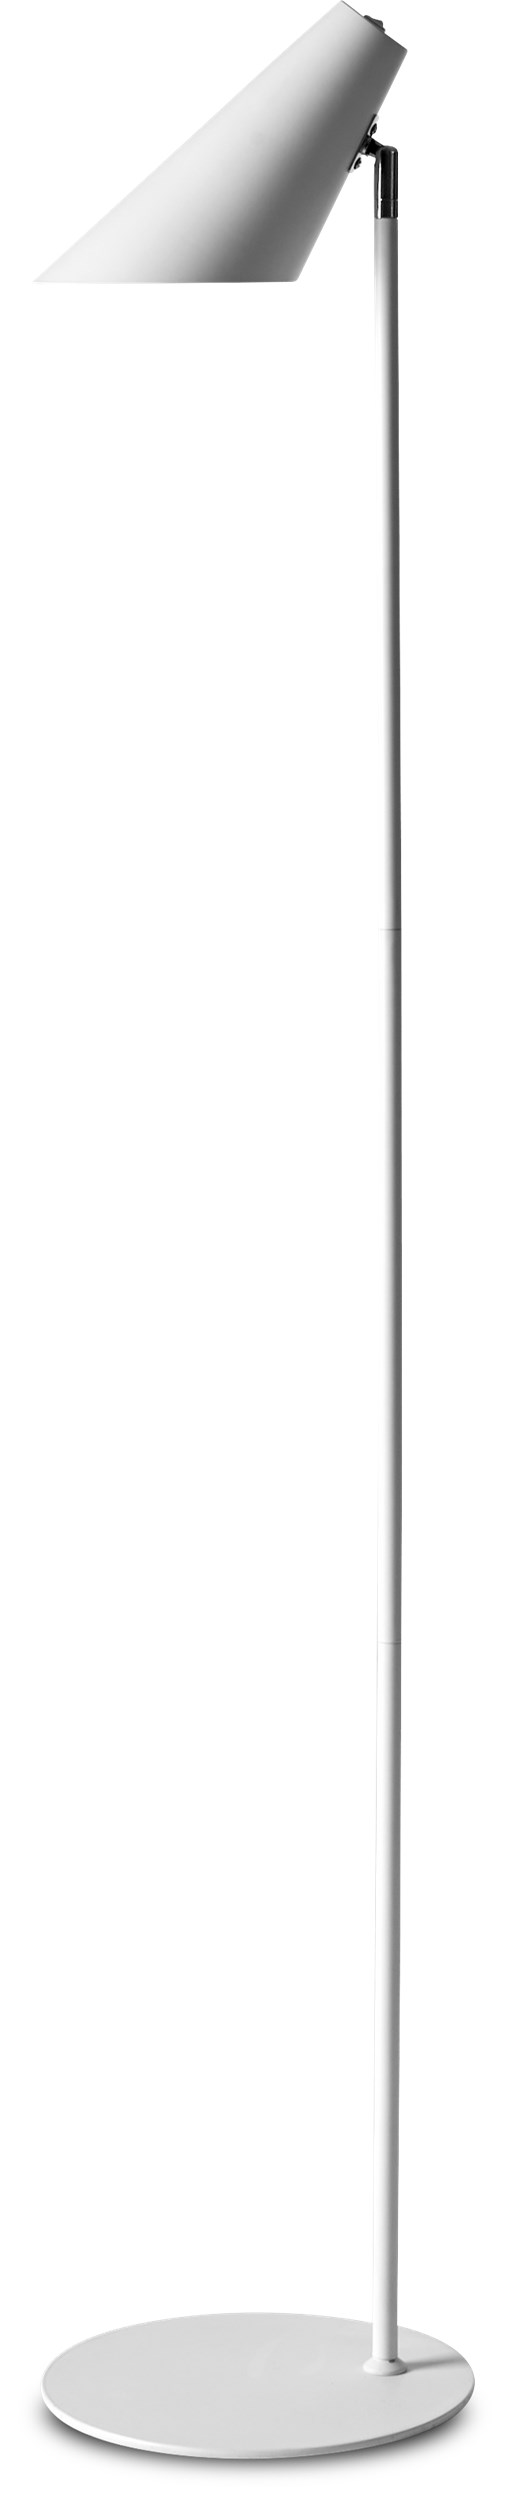 Cale Golvlampa 135 x 15,5 cm - Vit metallskärm/bas, stång i vitt/krom och vit textilsladd